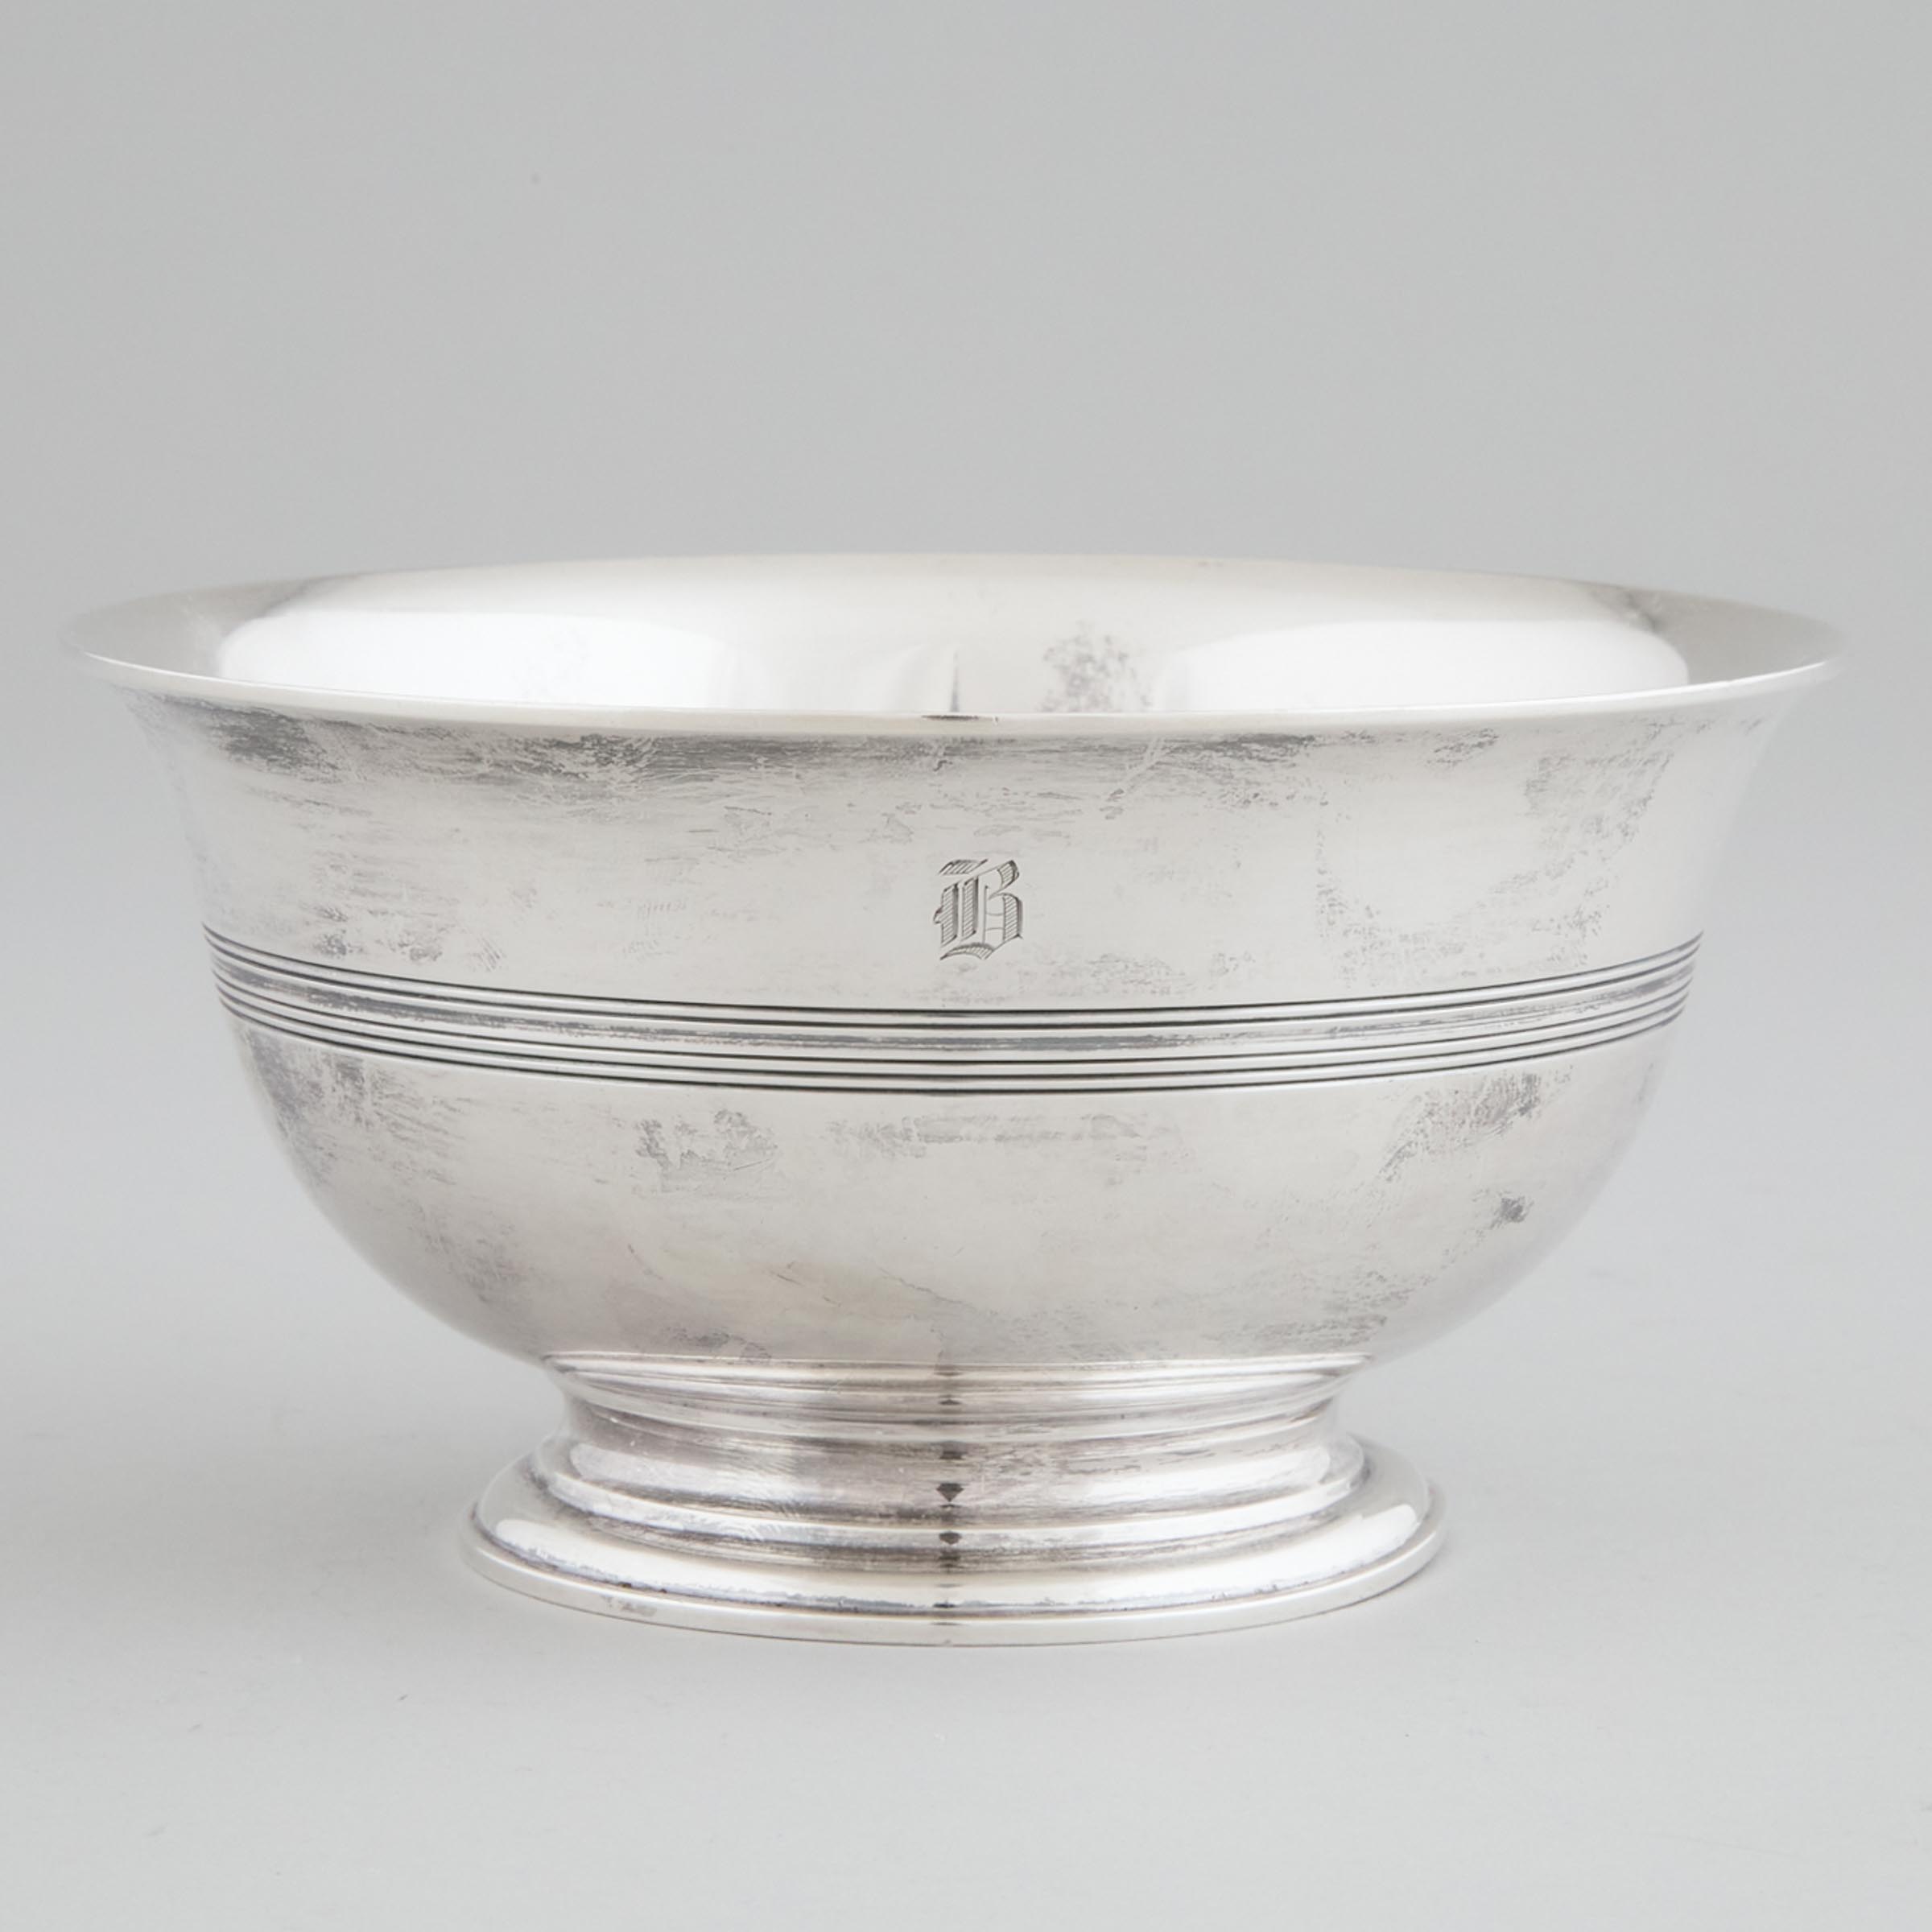 American Silver Bowl, Tiffany & Co., New York, N.Y., c.1907-38